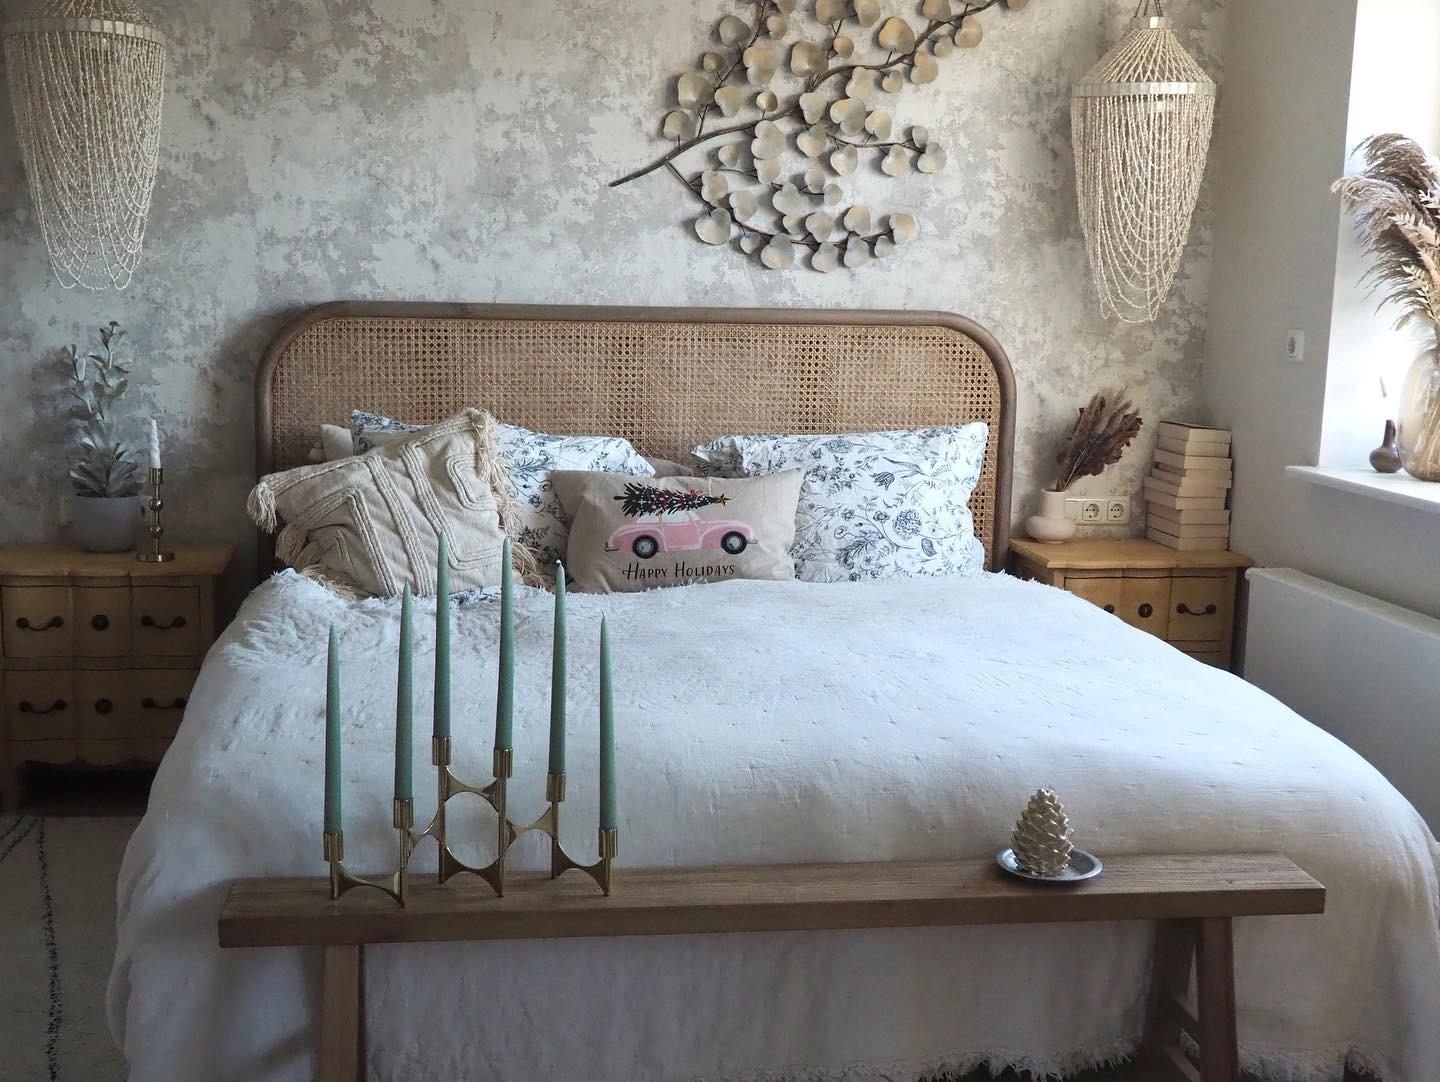 Cozy Bedroom ✨ #schlafzimmer #kissen #weihnachtsdeko #COUCHstyle #couchmagazin